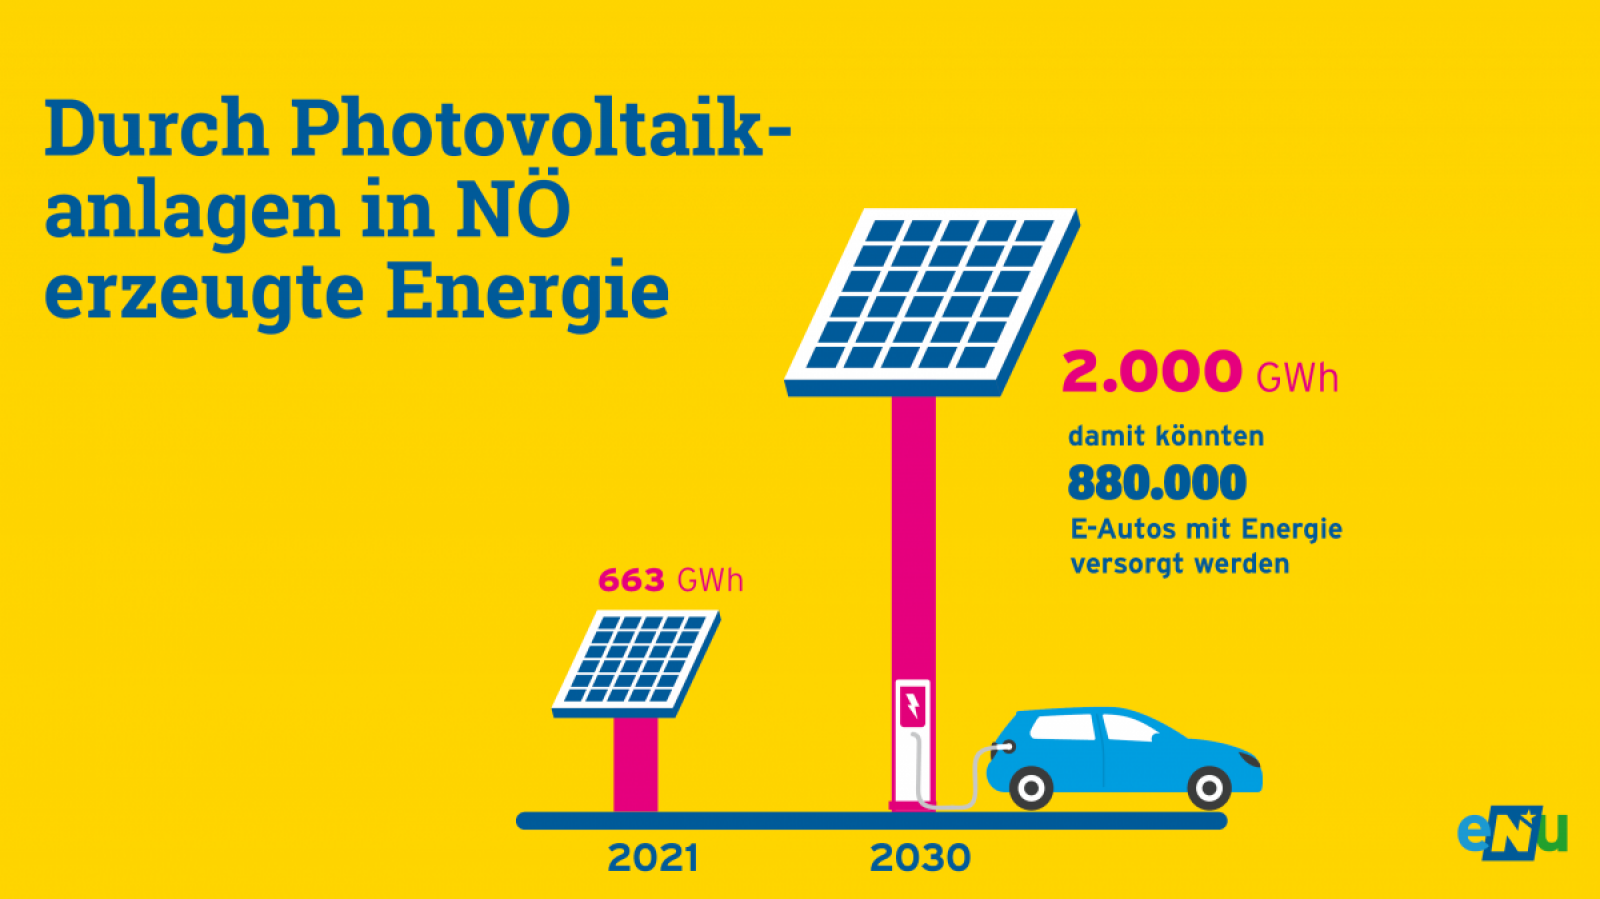 Grafik: Die Stromerzeugung durch Photovoltaikanlagen soll in NÖ von 663 Gigawattsunden auf 2.000 Gigawattstunden im Jahr 2030 gesteigert werden. Damit können 880.000 Elektroautos versorgt werden.